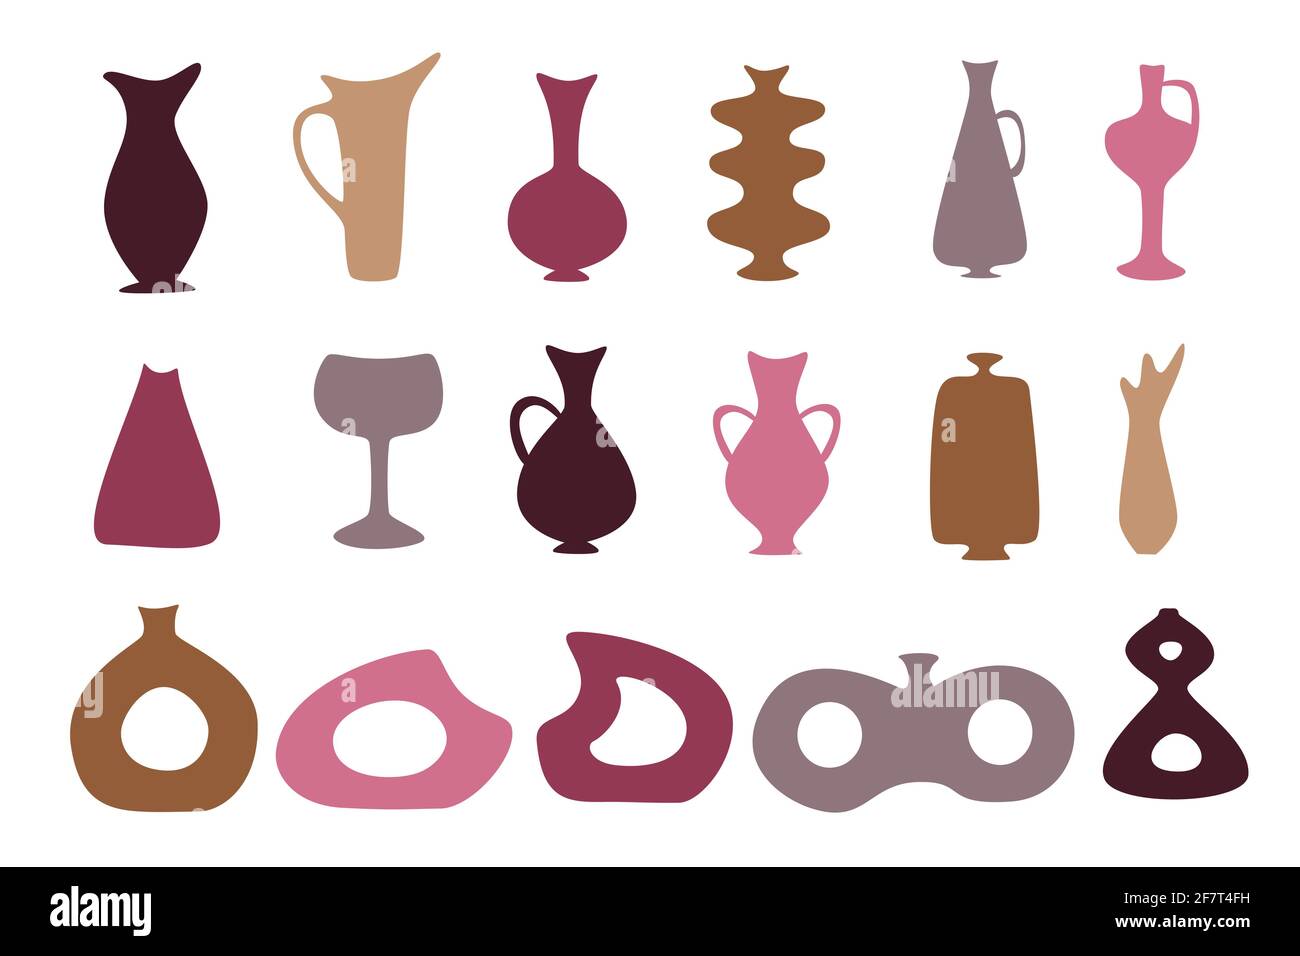 Set von farbigen Vasen, Flaschen, Urnen und Gläser Silhouetten für abstraktes Design, einfache handgezeichnete Formen Vektor-Illustration Stock Vektor